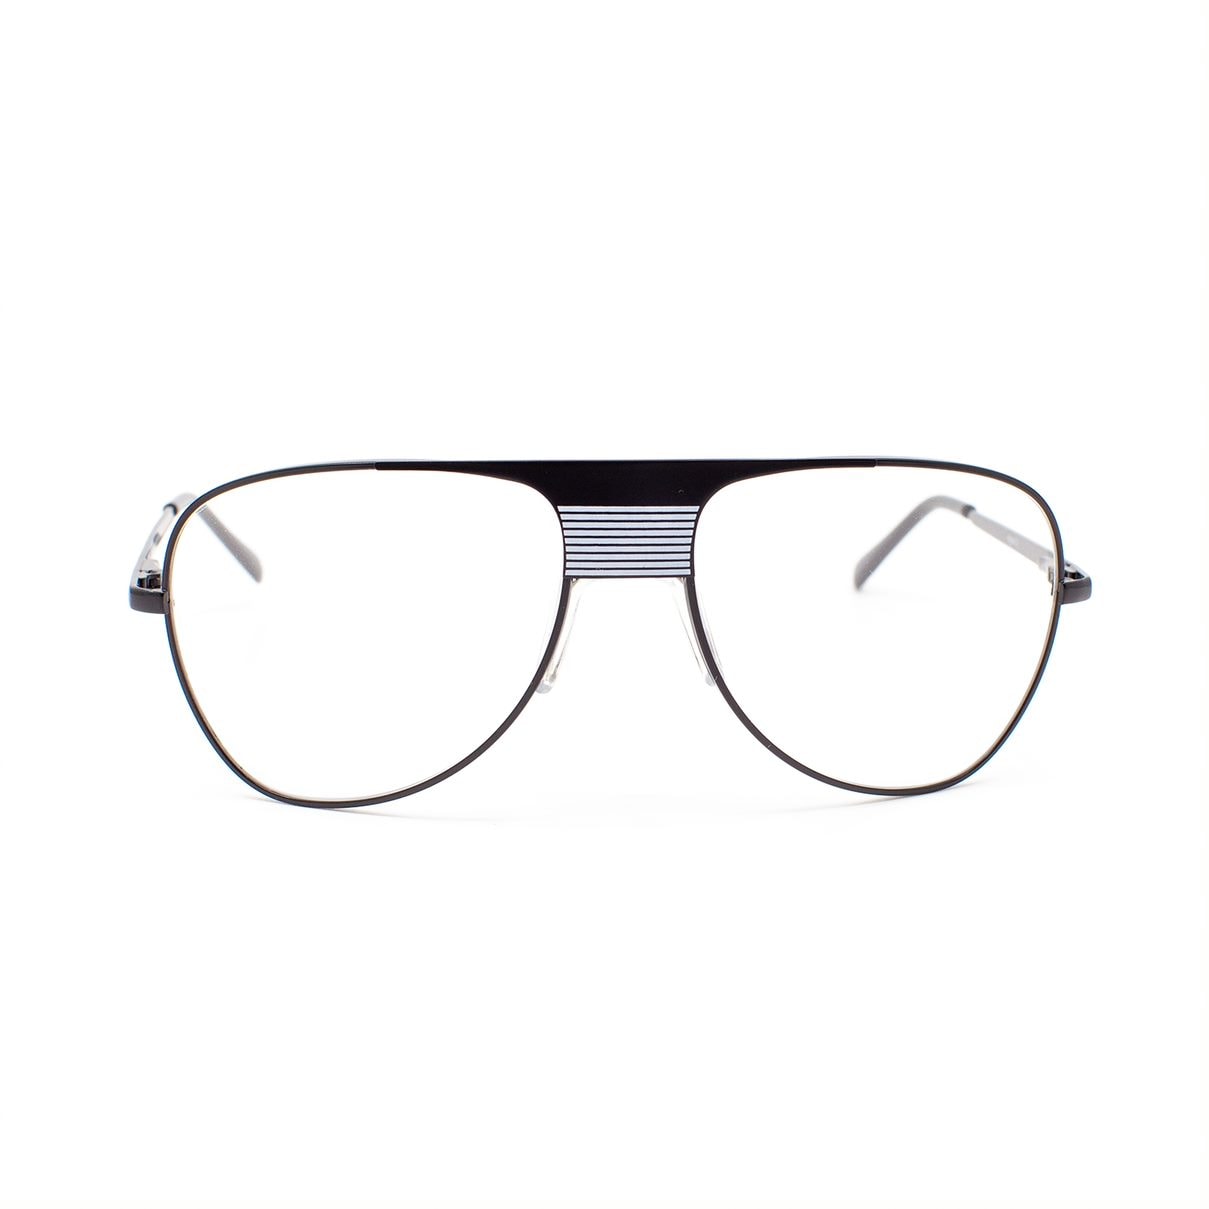 UK Trotting Glasses, Nova 3 model